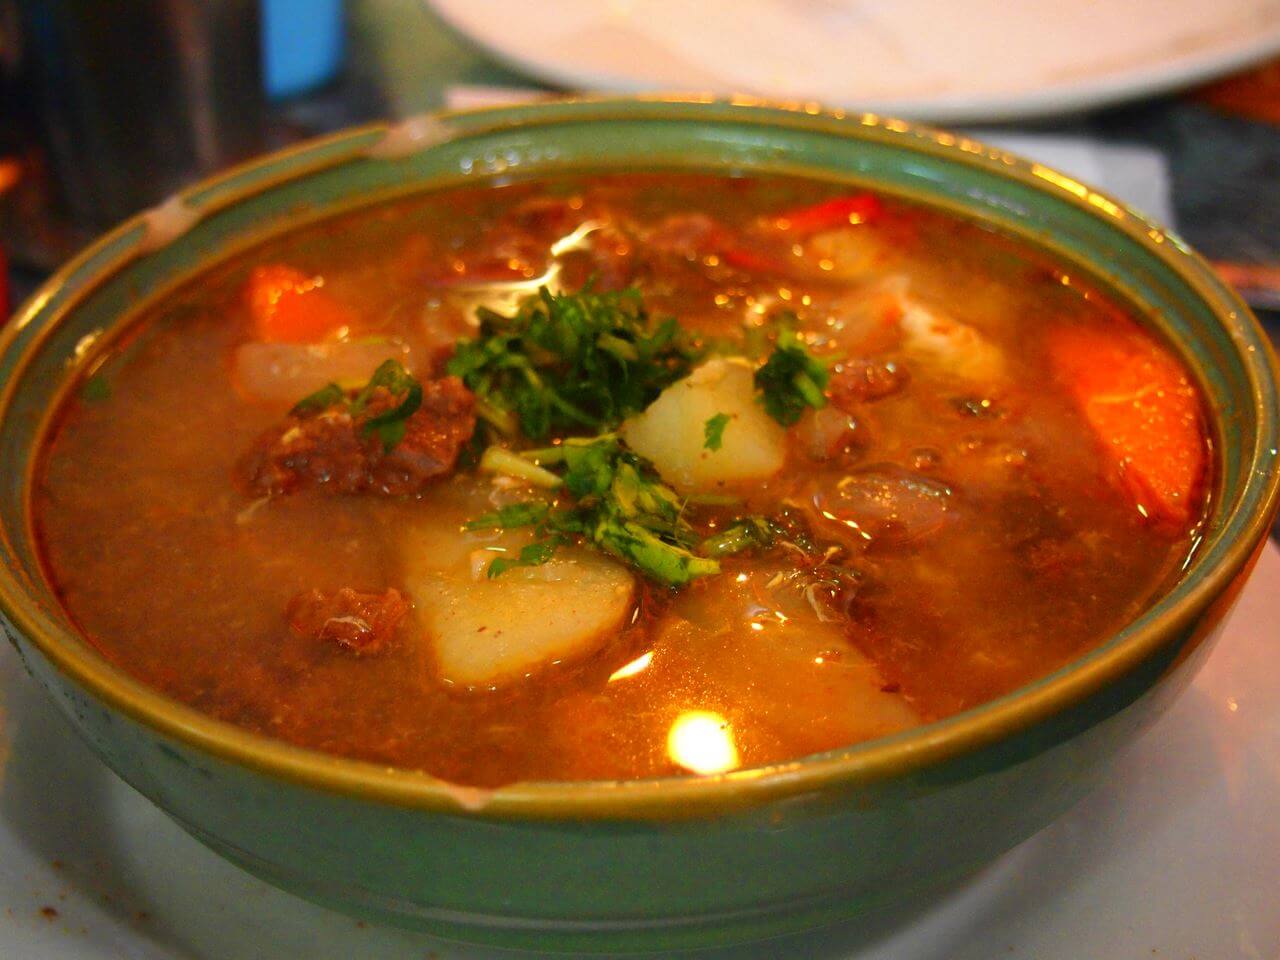 Типичное блюдо Валенсии - Ай и Пебре (all i pebre - чеснок и паприка), является типичным Валенсийским соусом